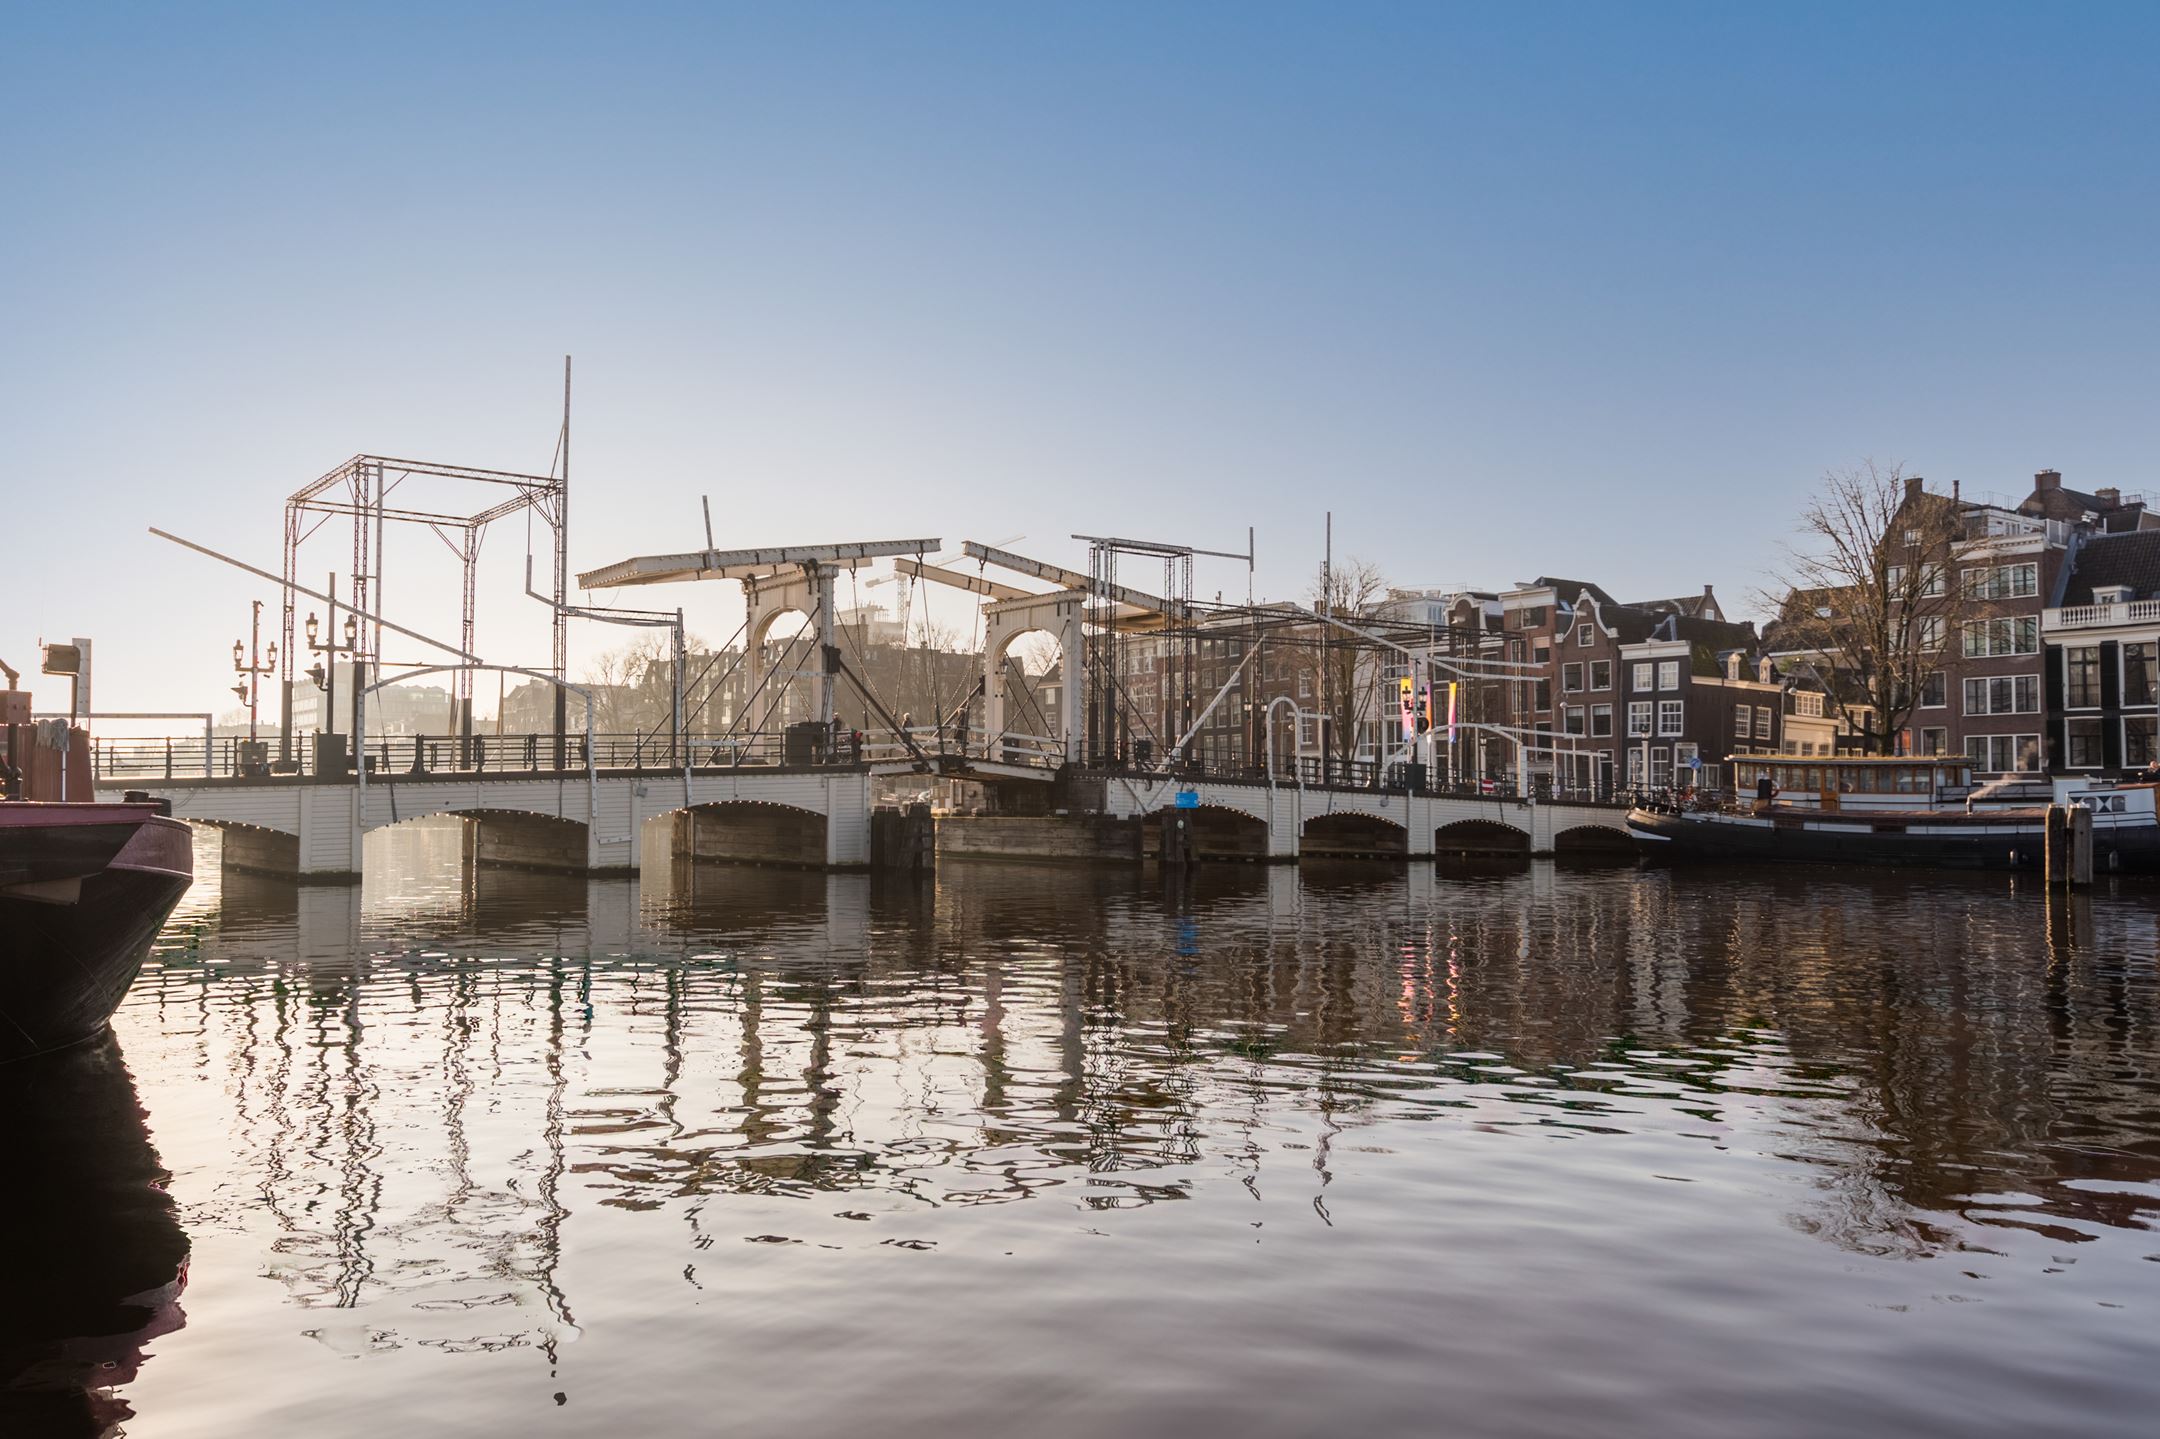 Dit absurde bedrag betaal je tegenwoordig voor een woonboot in Amsterdam